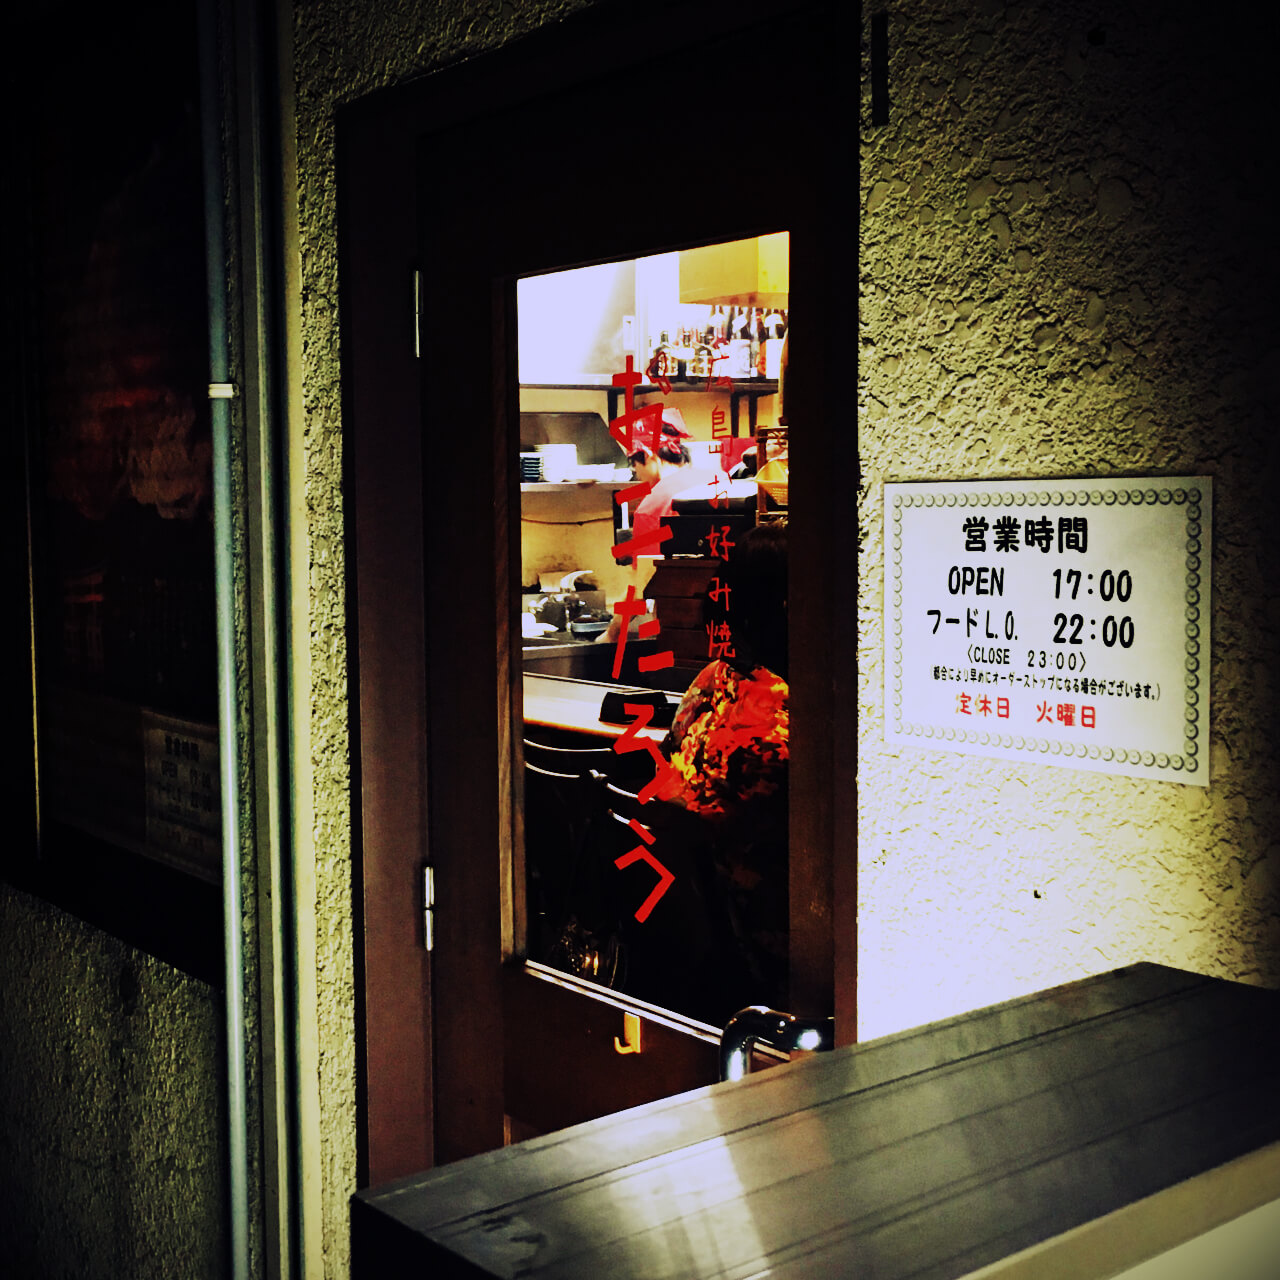 都内にはまだまだ少ないカウンター越しで広島のお好み焼きを食す。亀有の広島お好み焼き「おこたろう」。 | bbp